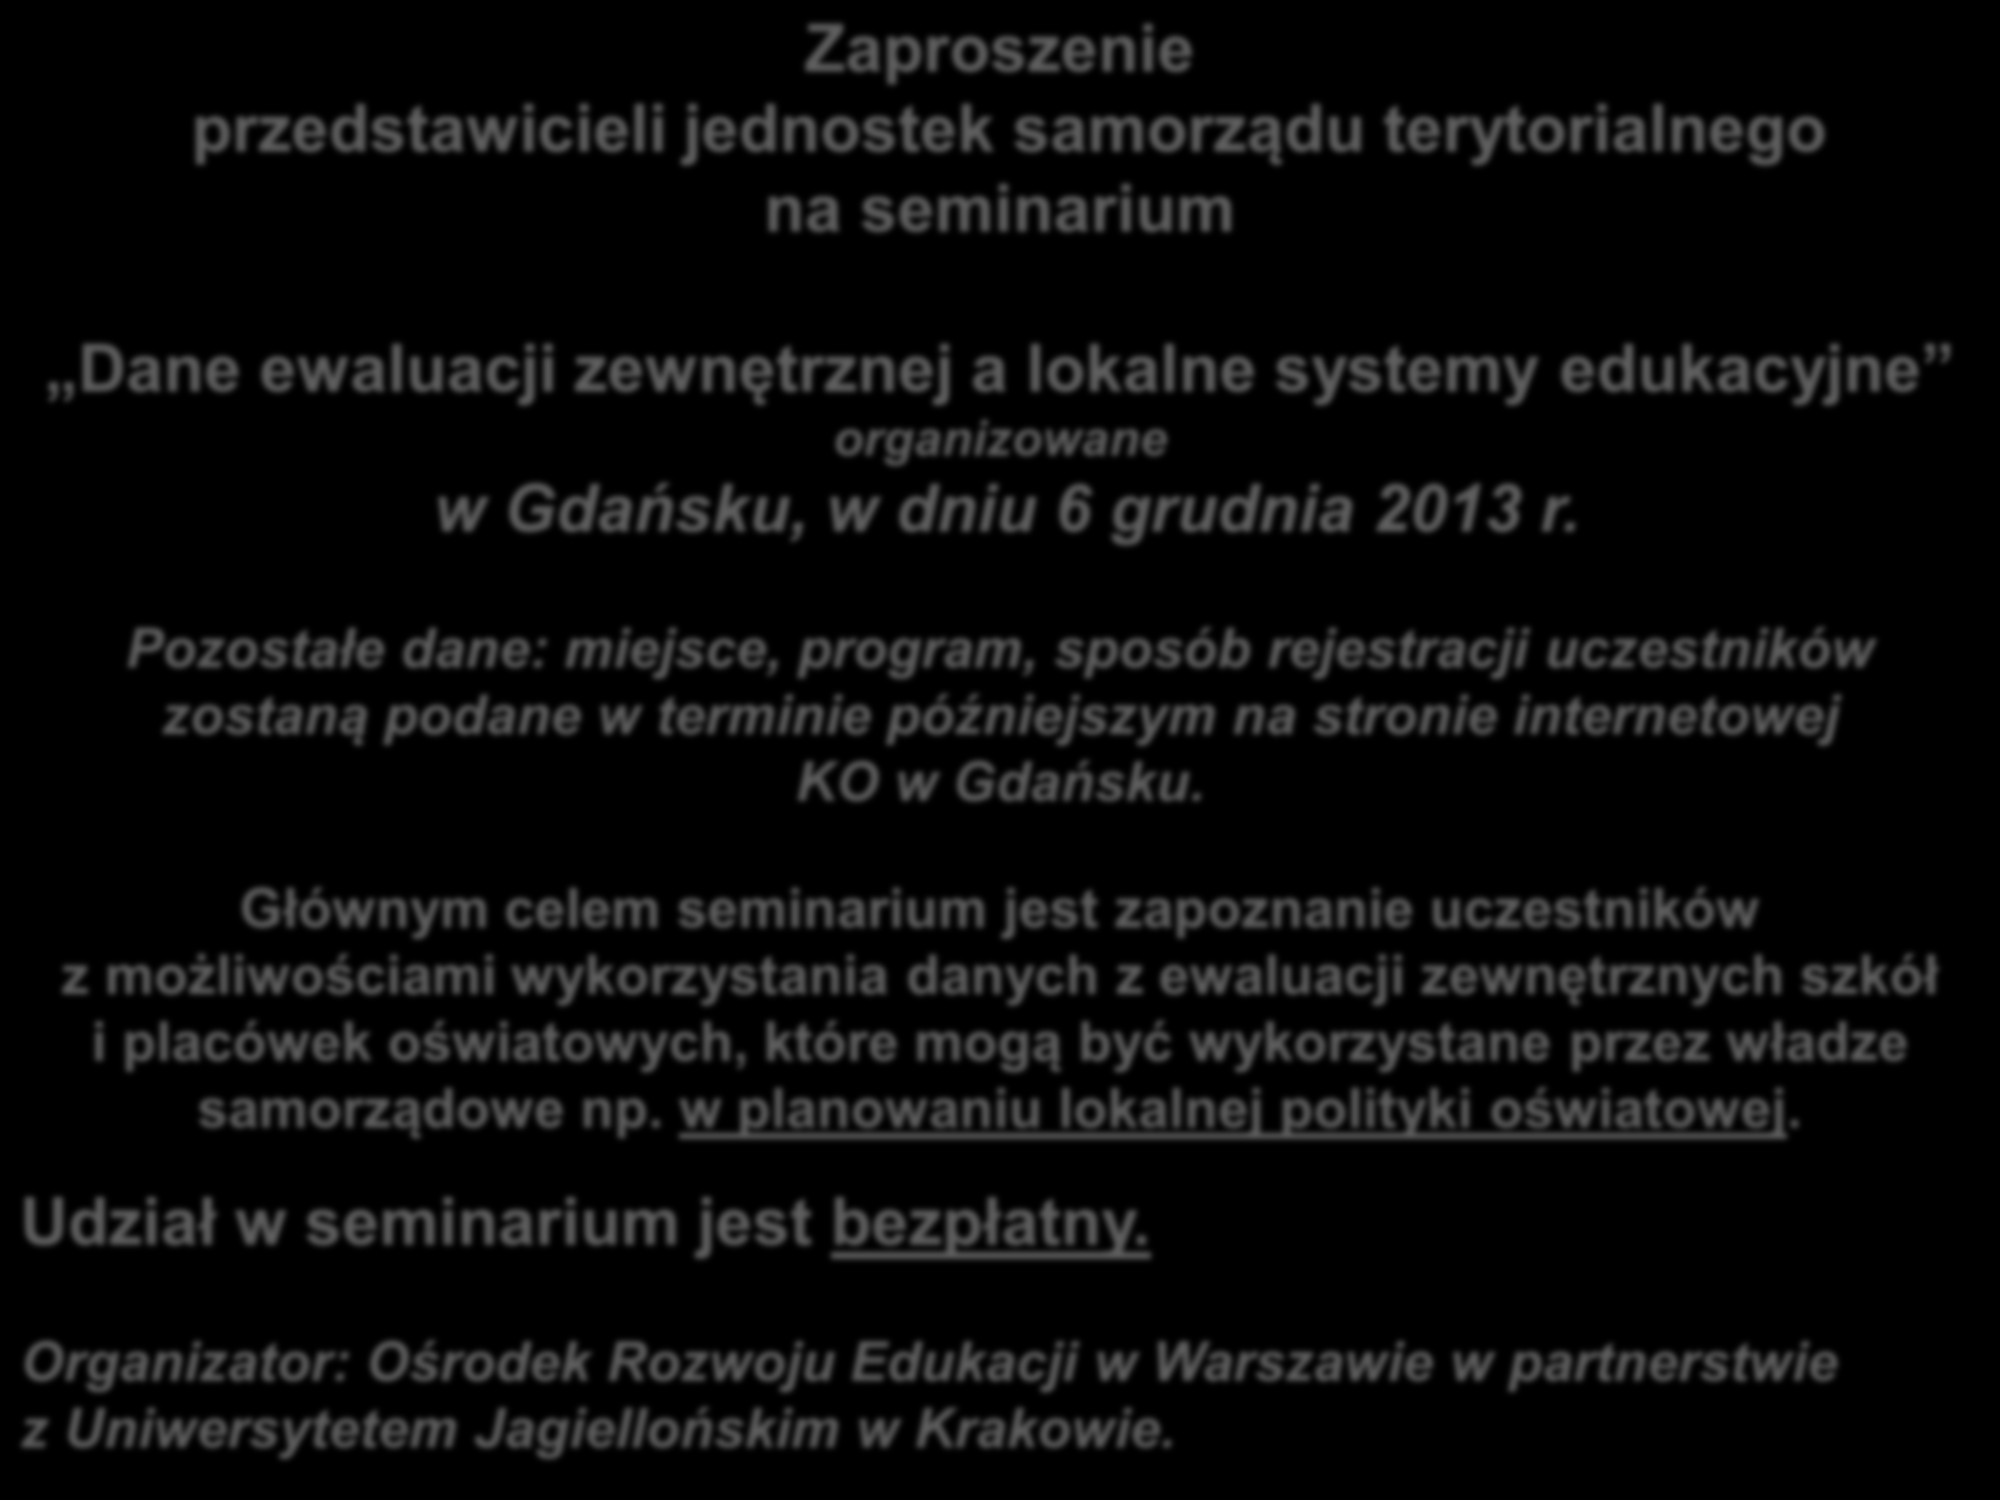 Zaproszenie przedstawicieli jednostek samorządu terytorialnego na seminarium Dane ewaluacji zewnętrznej a lokalne systemy edukacyjne organizowane w Gdańsku, w dniu 6 grudnia 2013 r.